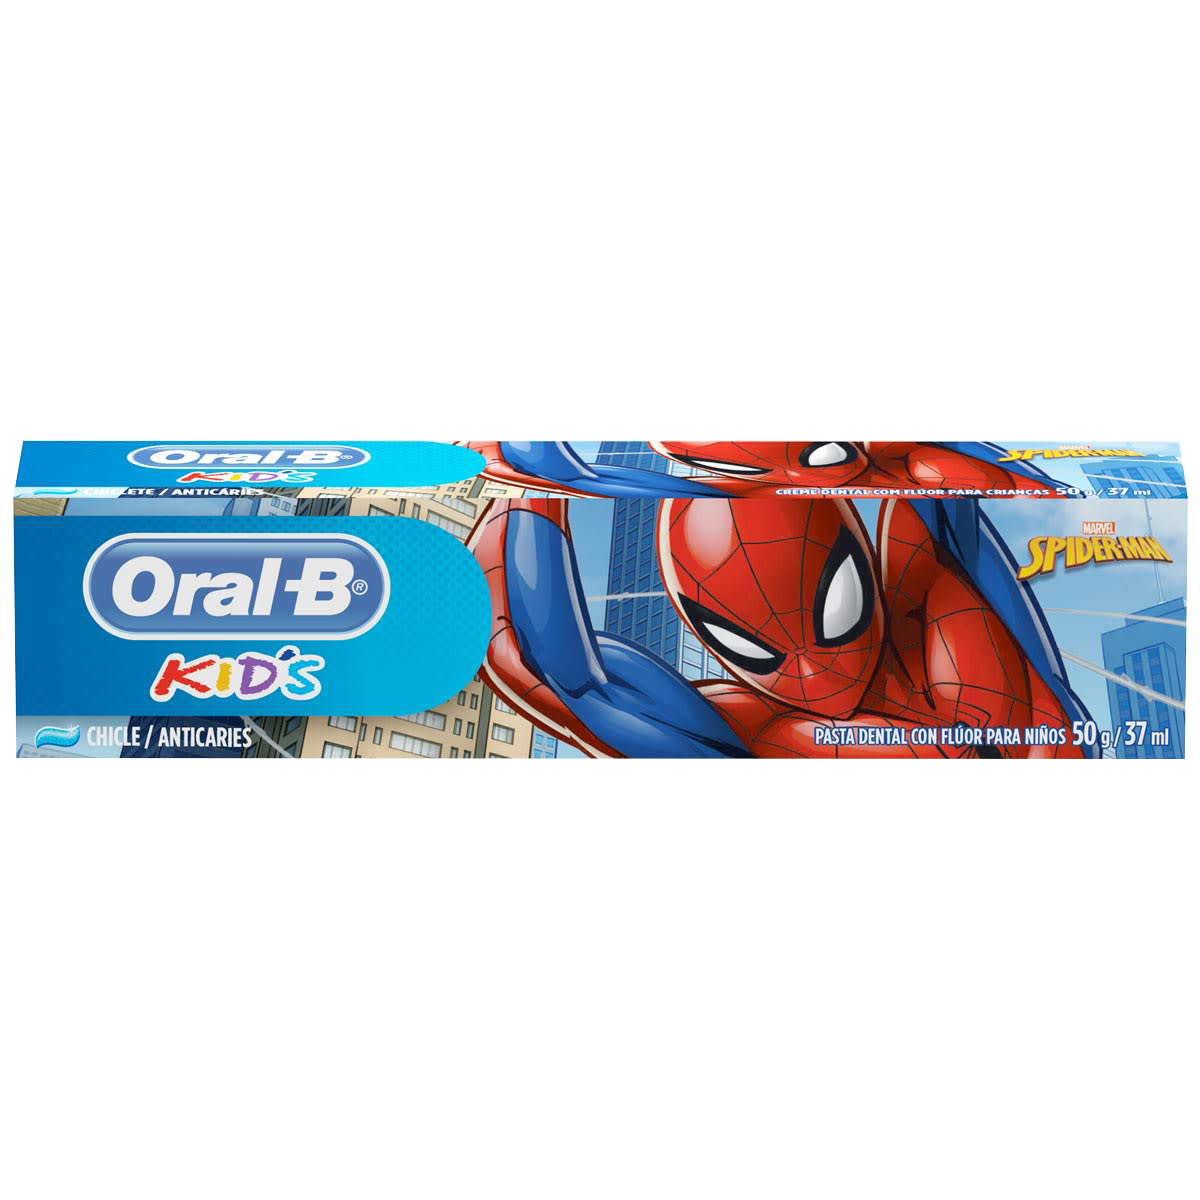 Pasta Dental Oral-B Kids Spiderman undefined